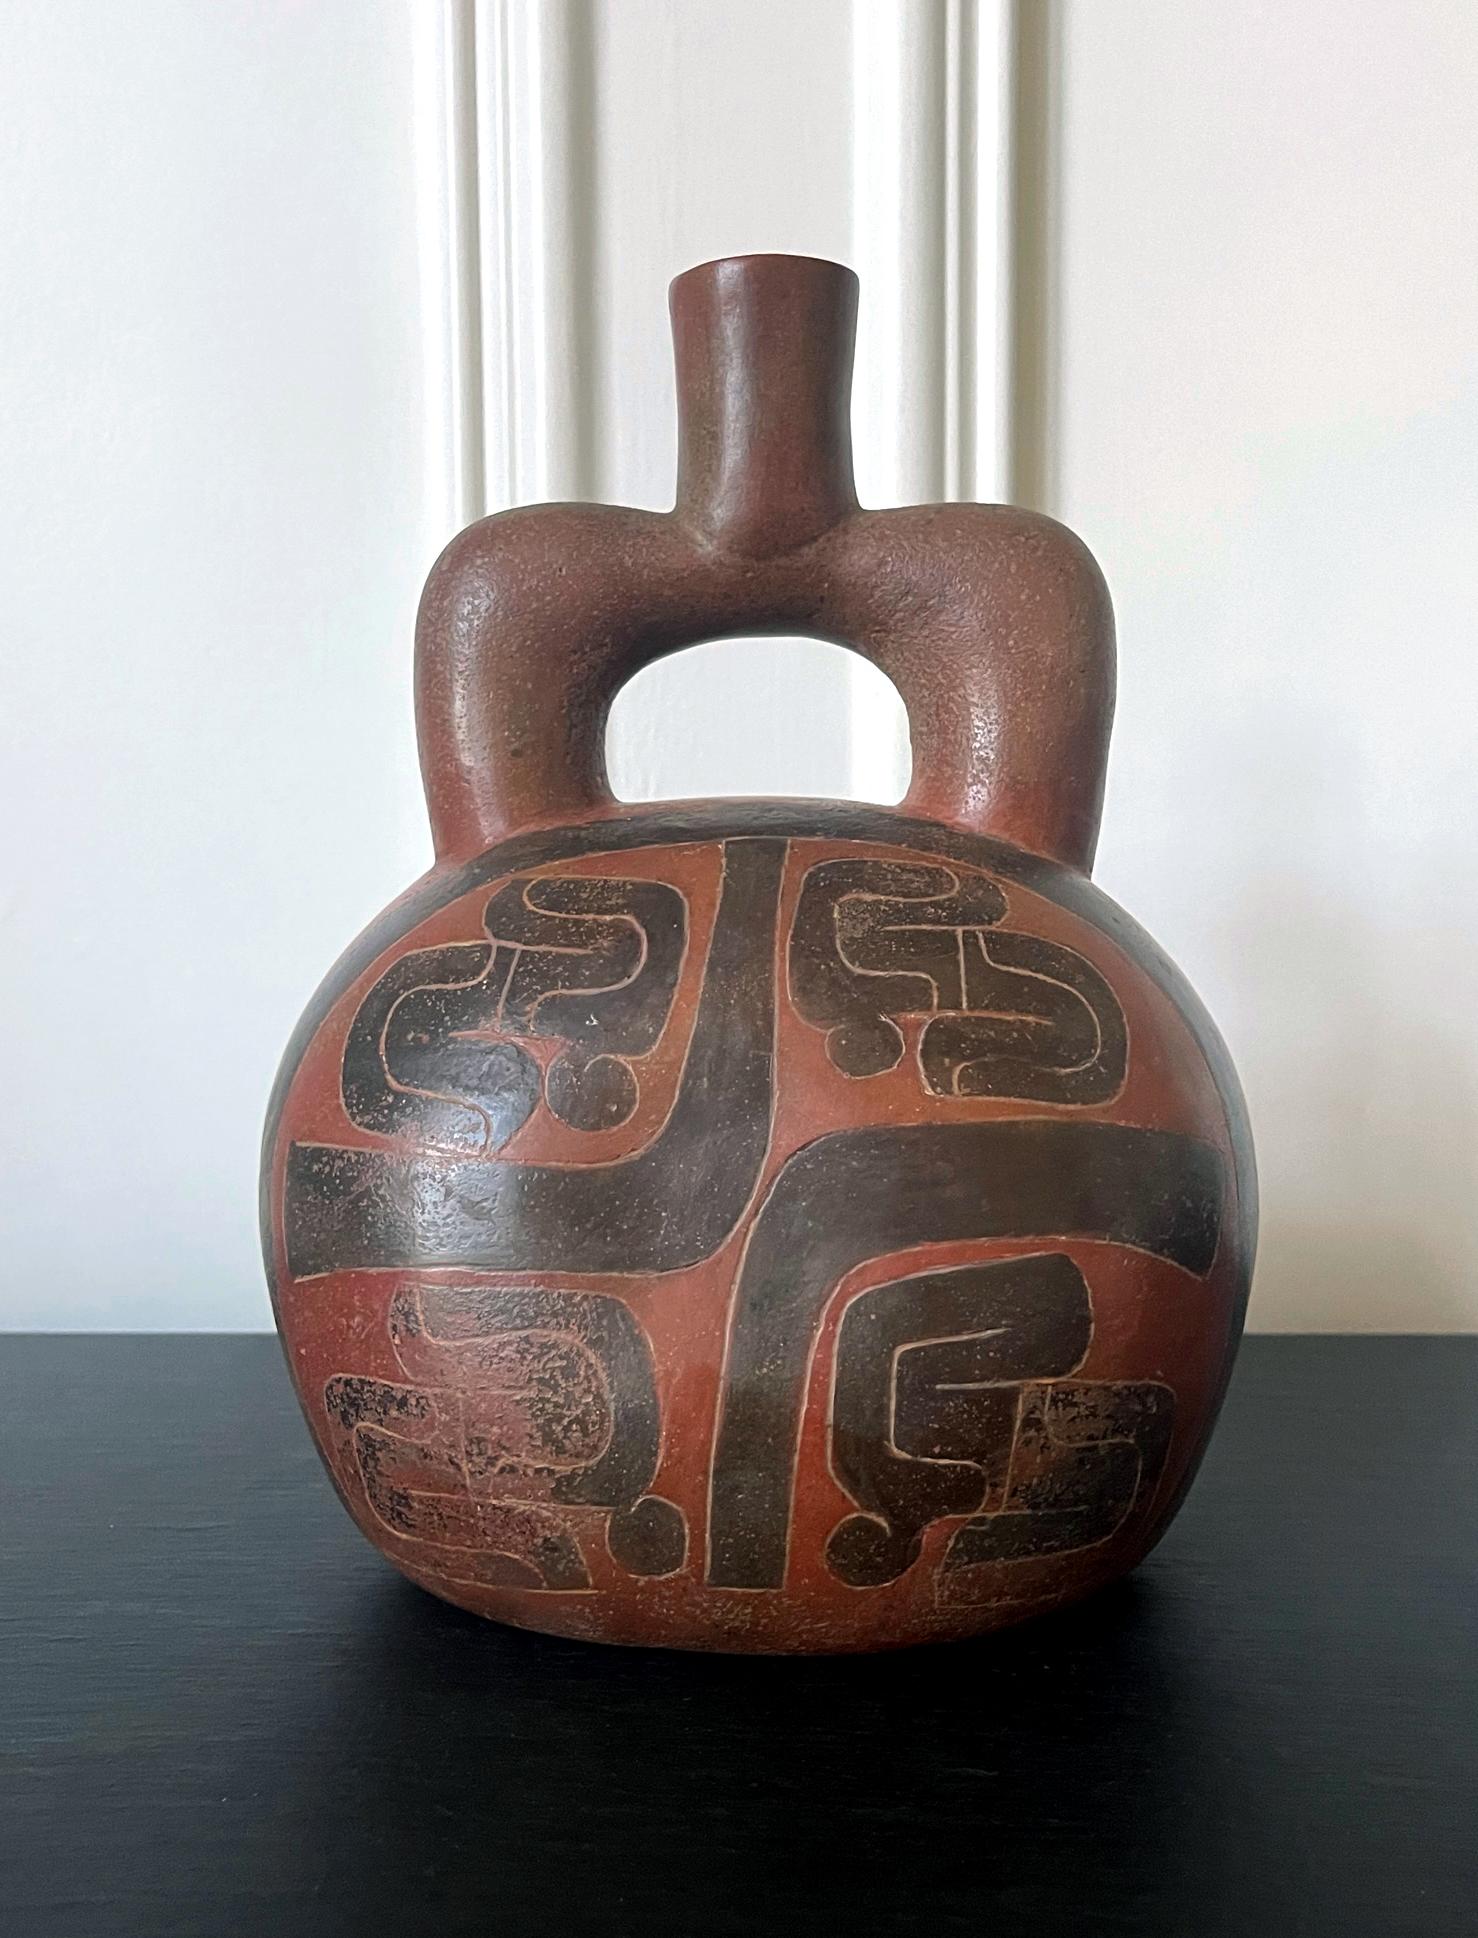 Prä-Columbianisches Steigbügelgefäß aus Keramik im Cupisnique-Stil, ca. 700-500 v. Chr. Dieses antike Gefäß hat einen robusten, gedrungenen Körper und einen kurzen, dicken Steigbügelaufsatz. Kräftige geometrische Muster in schwarz gefärbten